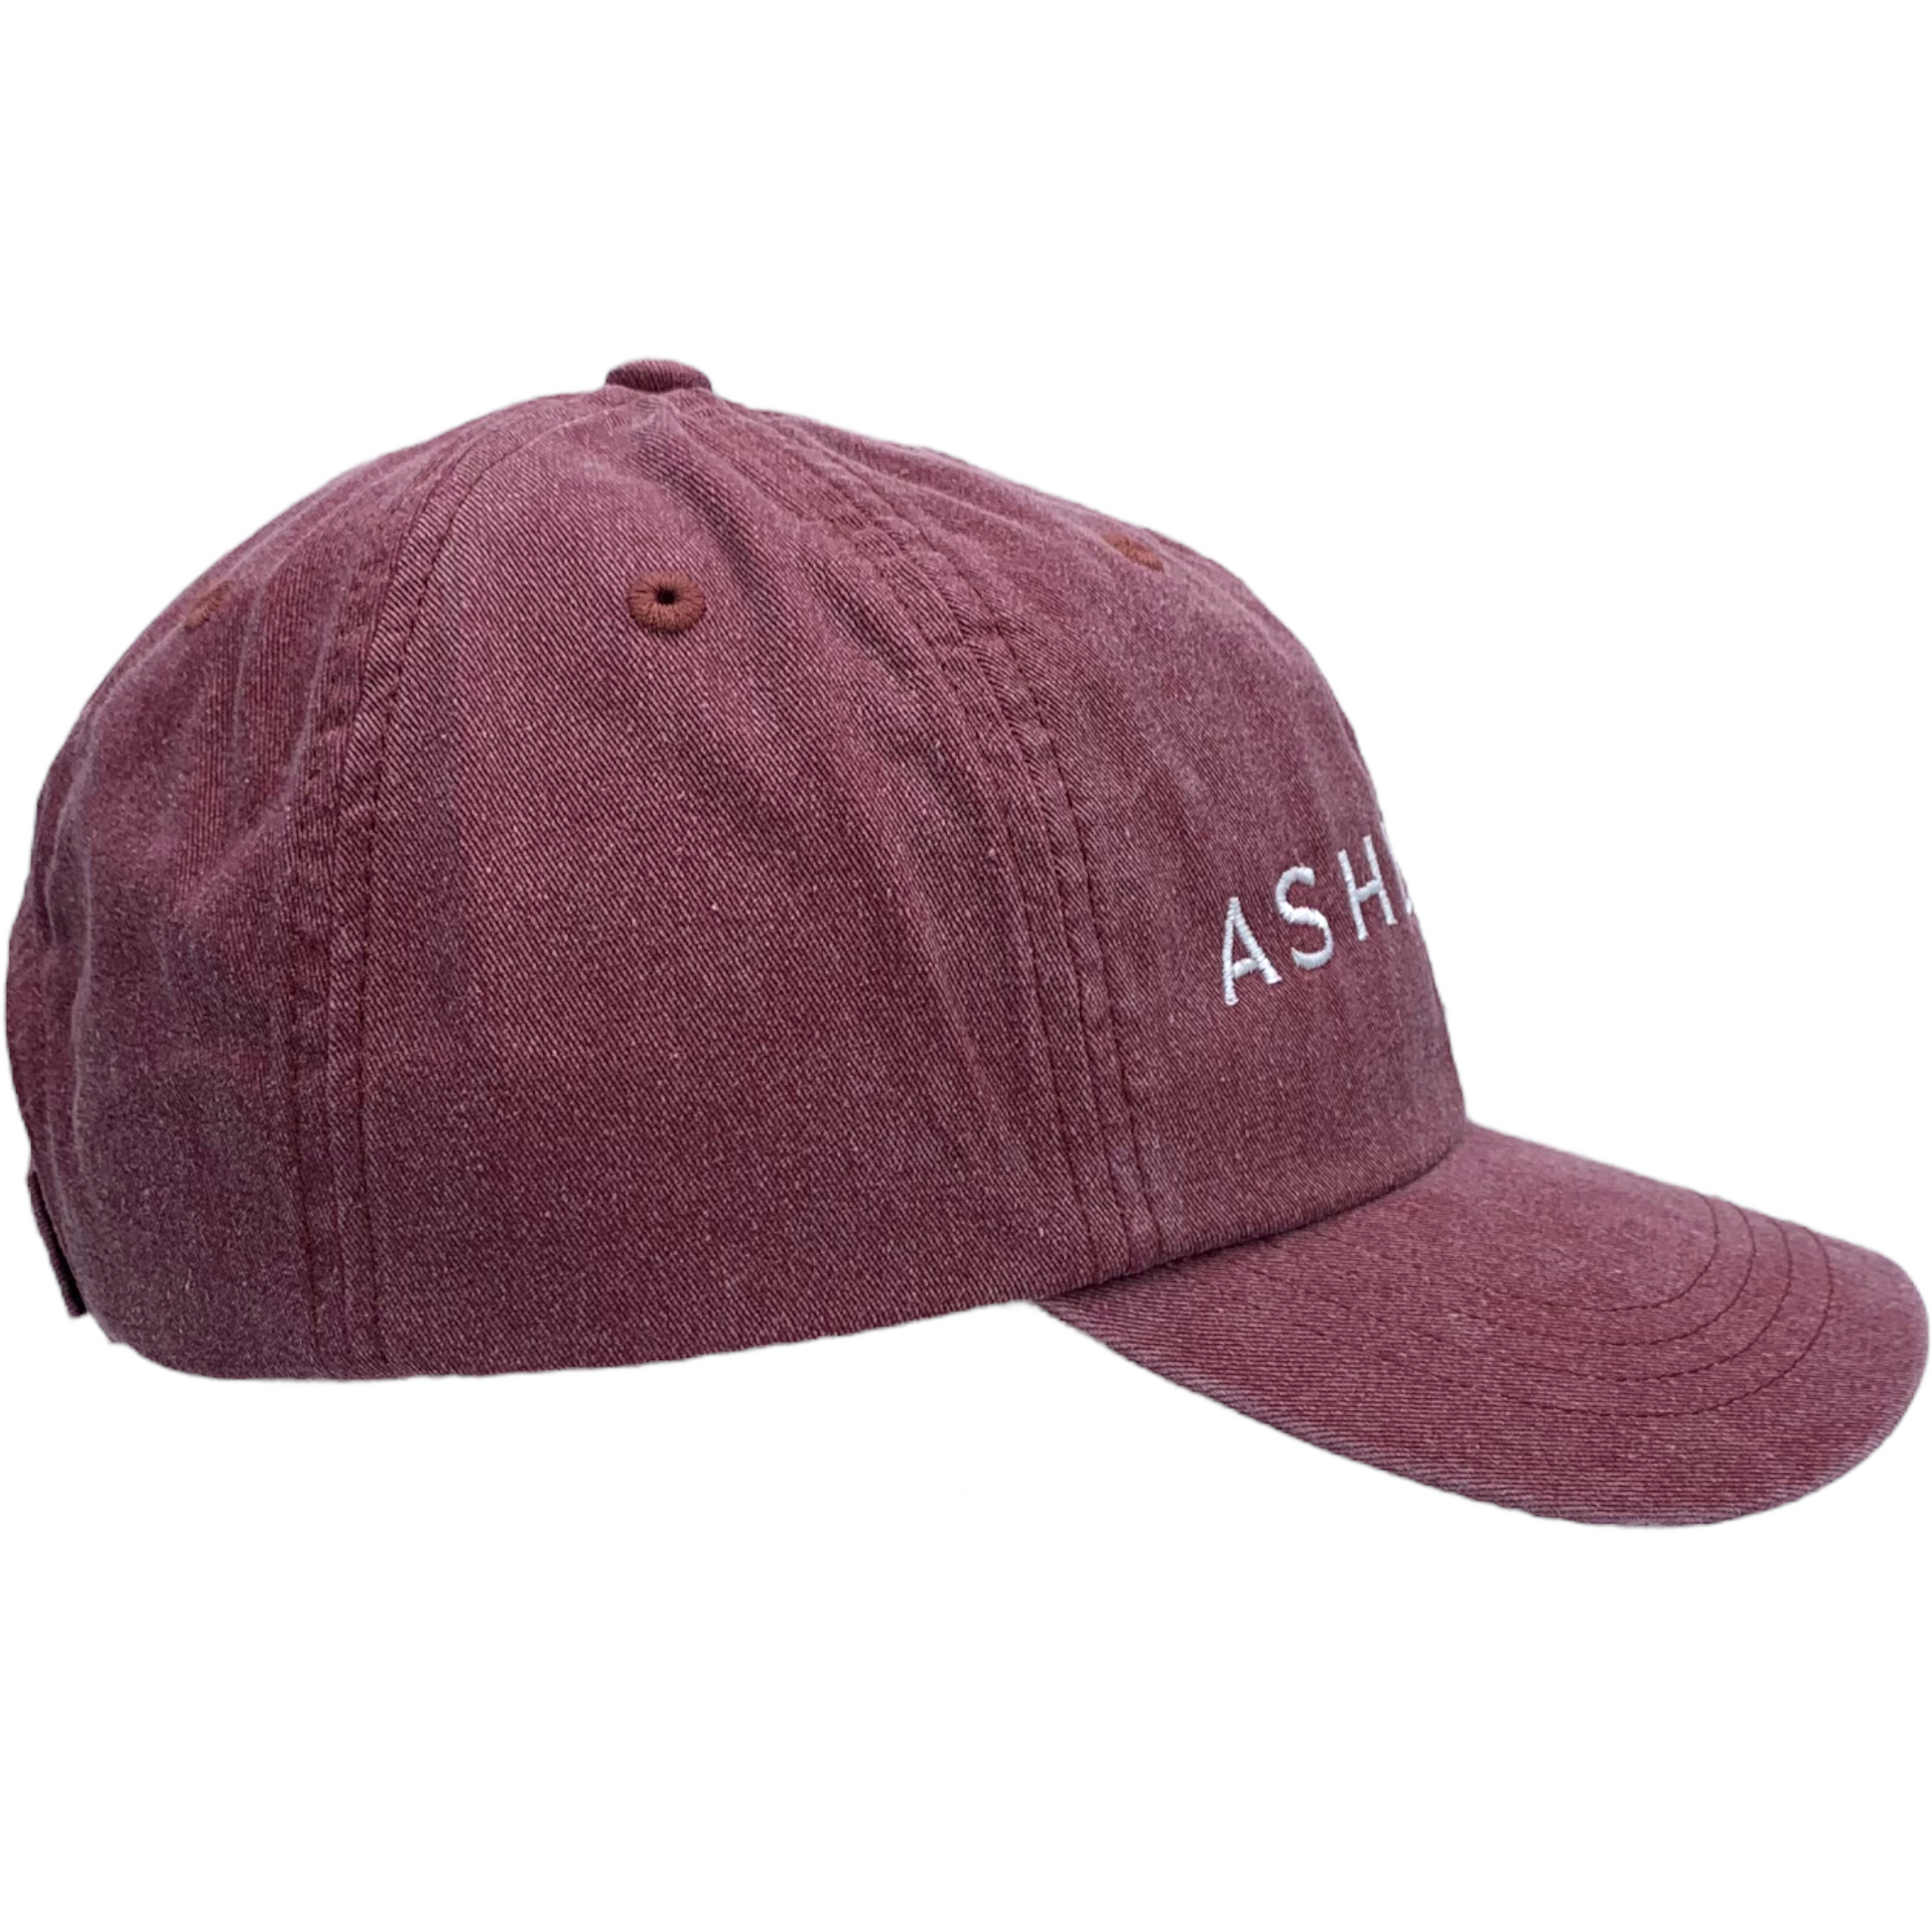 ASHEVILLE Crimson Baseball Hat - The ASHEVILLE Co. TM